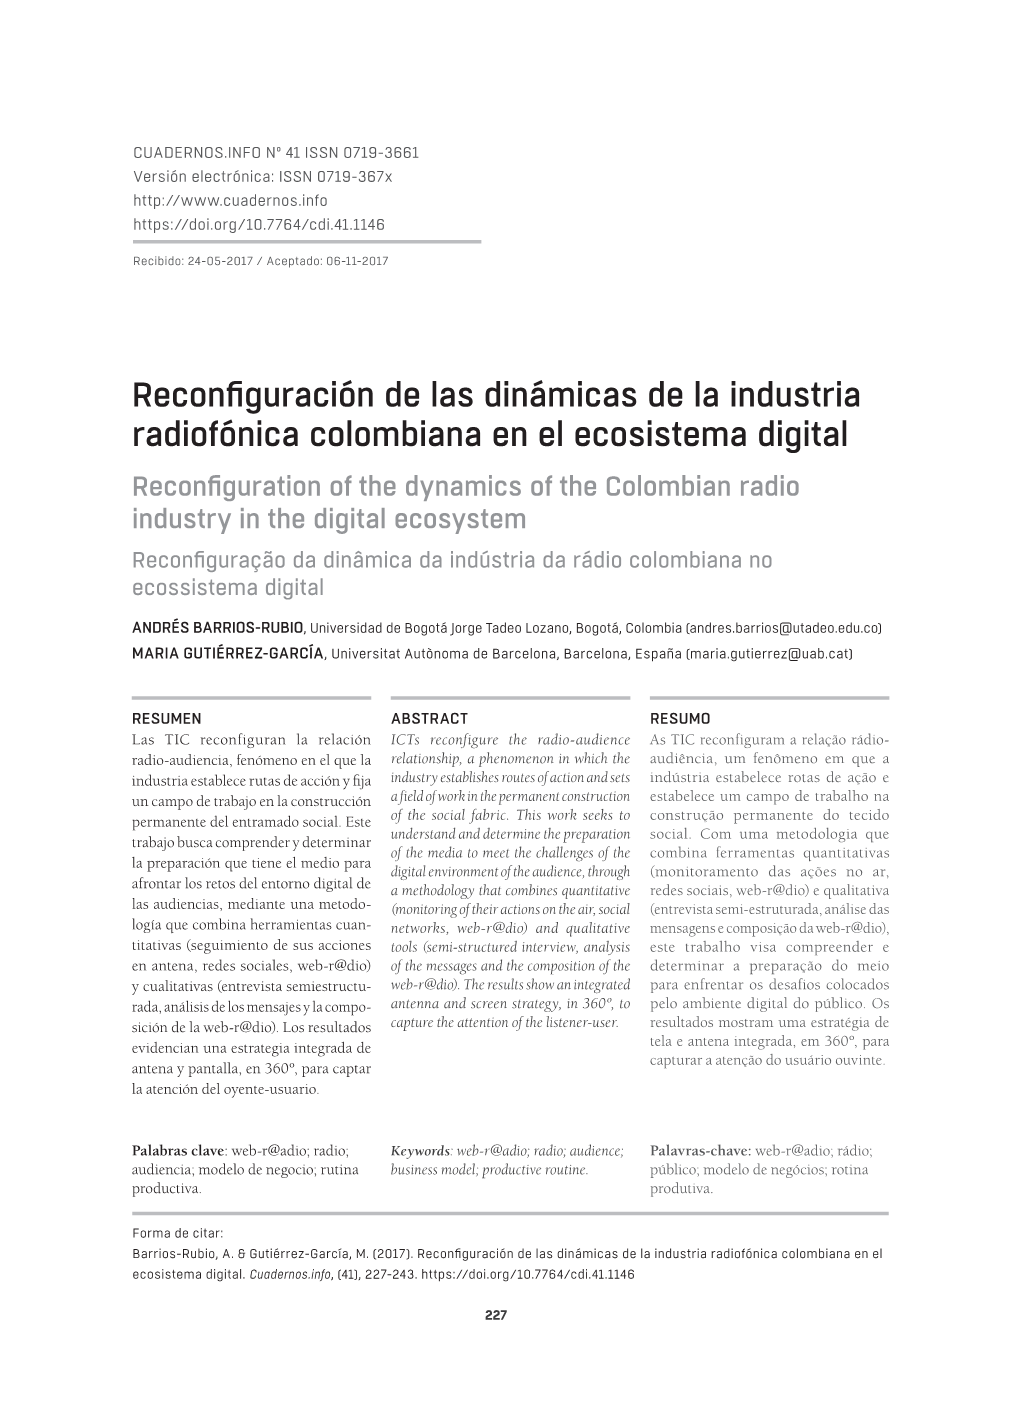 Reconfiguración De Las Dinámicas De La Industria Radiofónica Colombiana